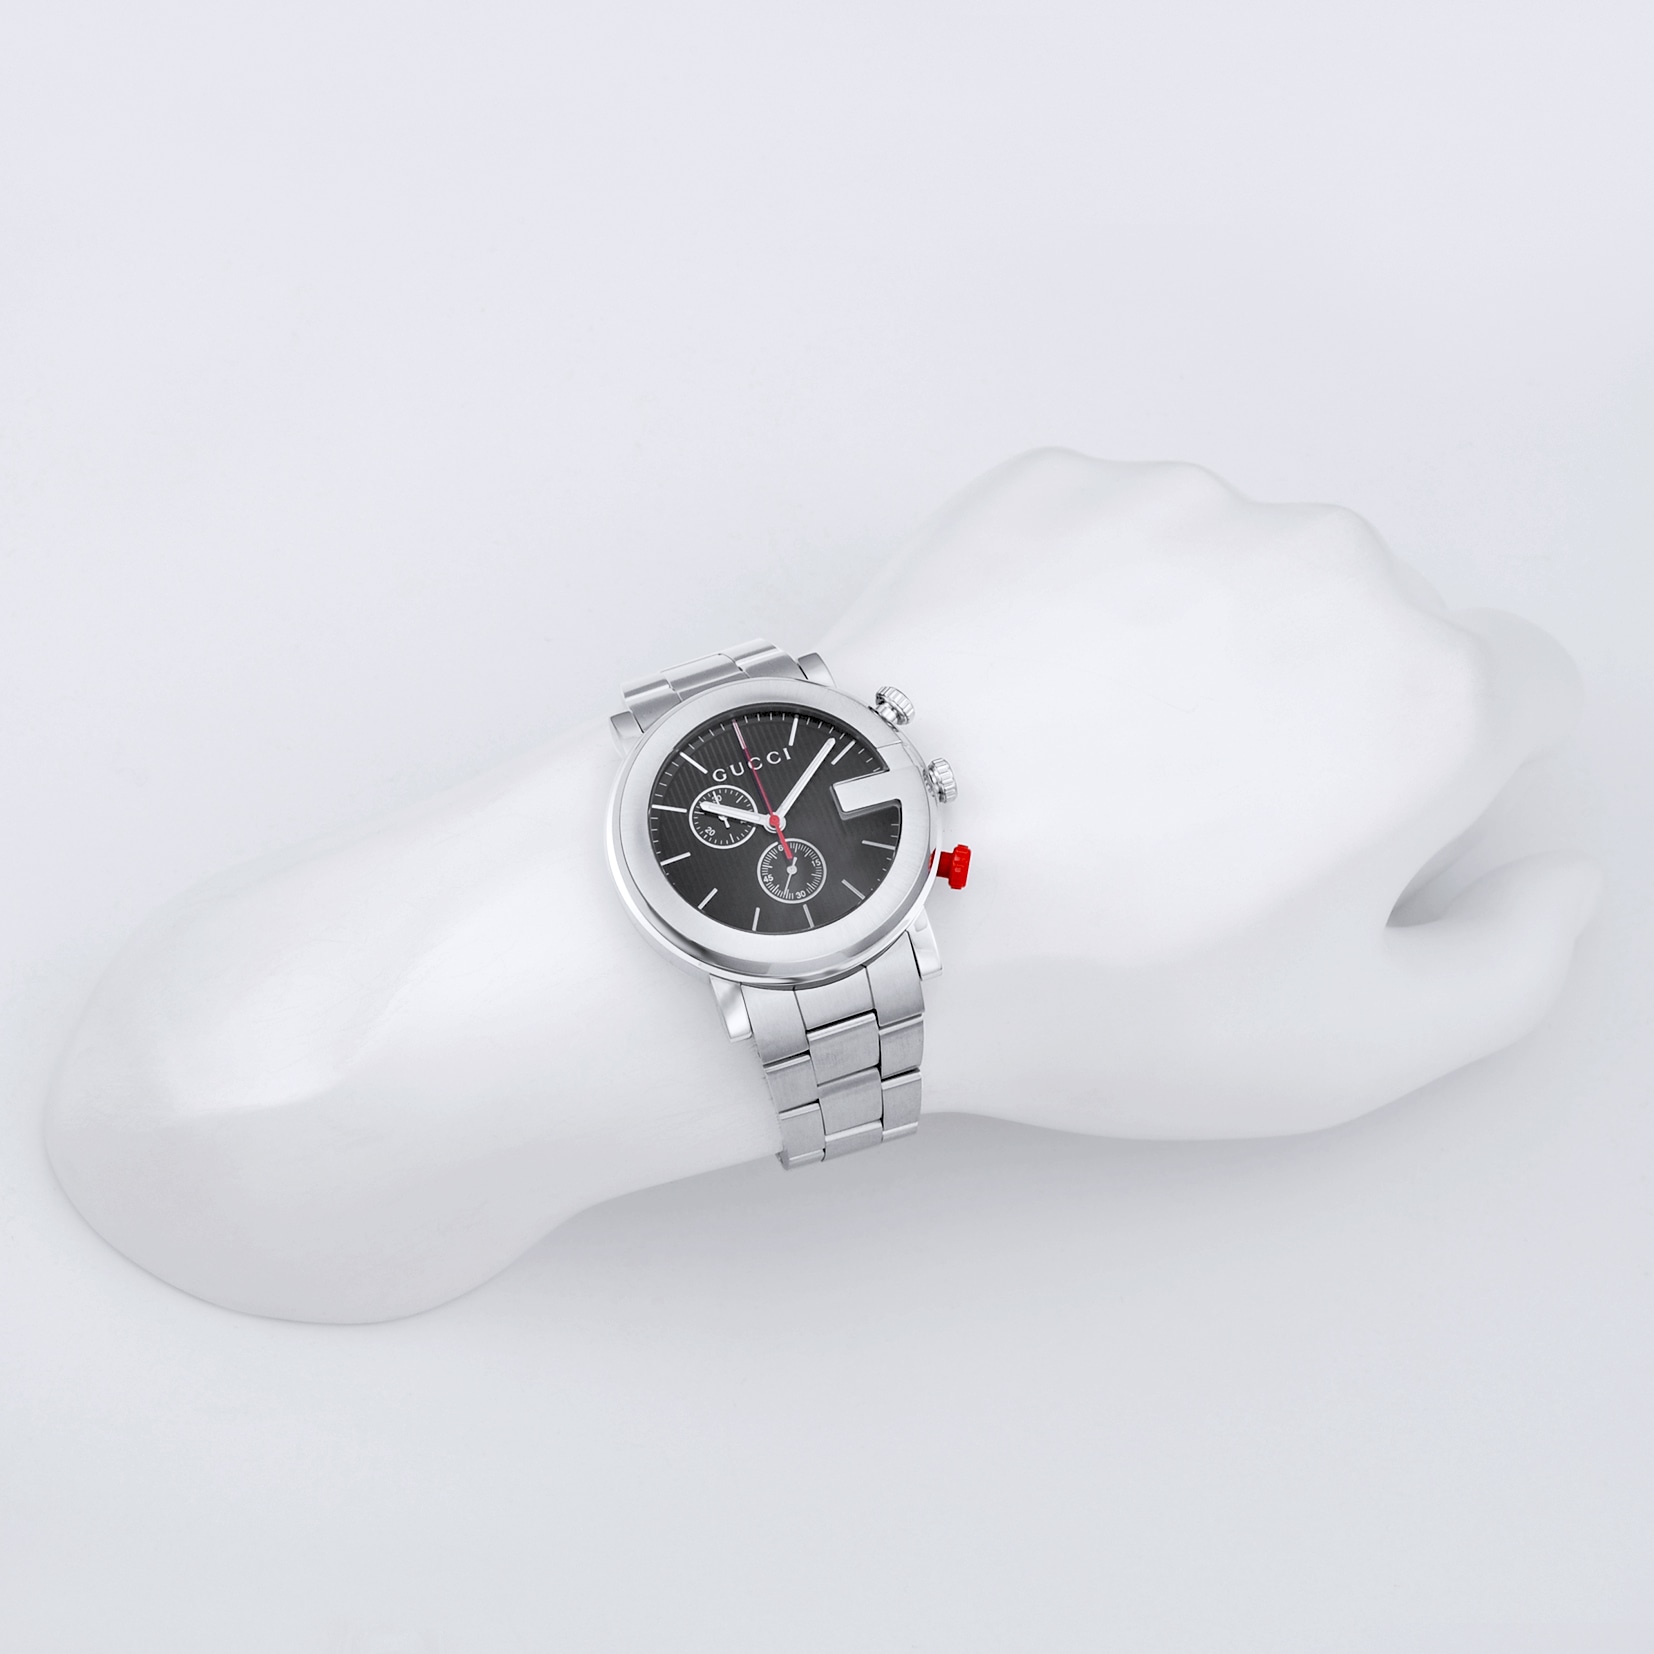 グッチ GUCCI 腕時計 メンズ G-CHRONO Gクロノ YA101361